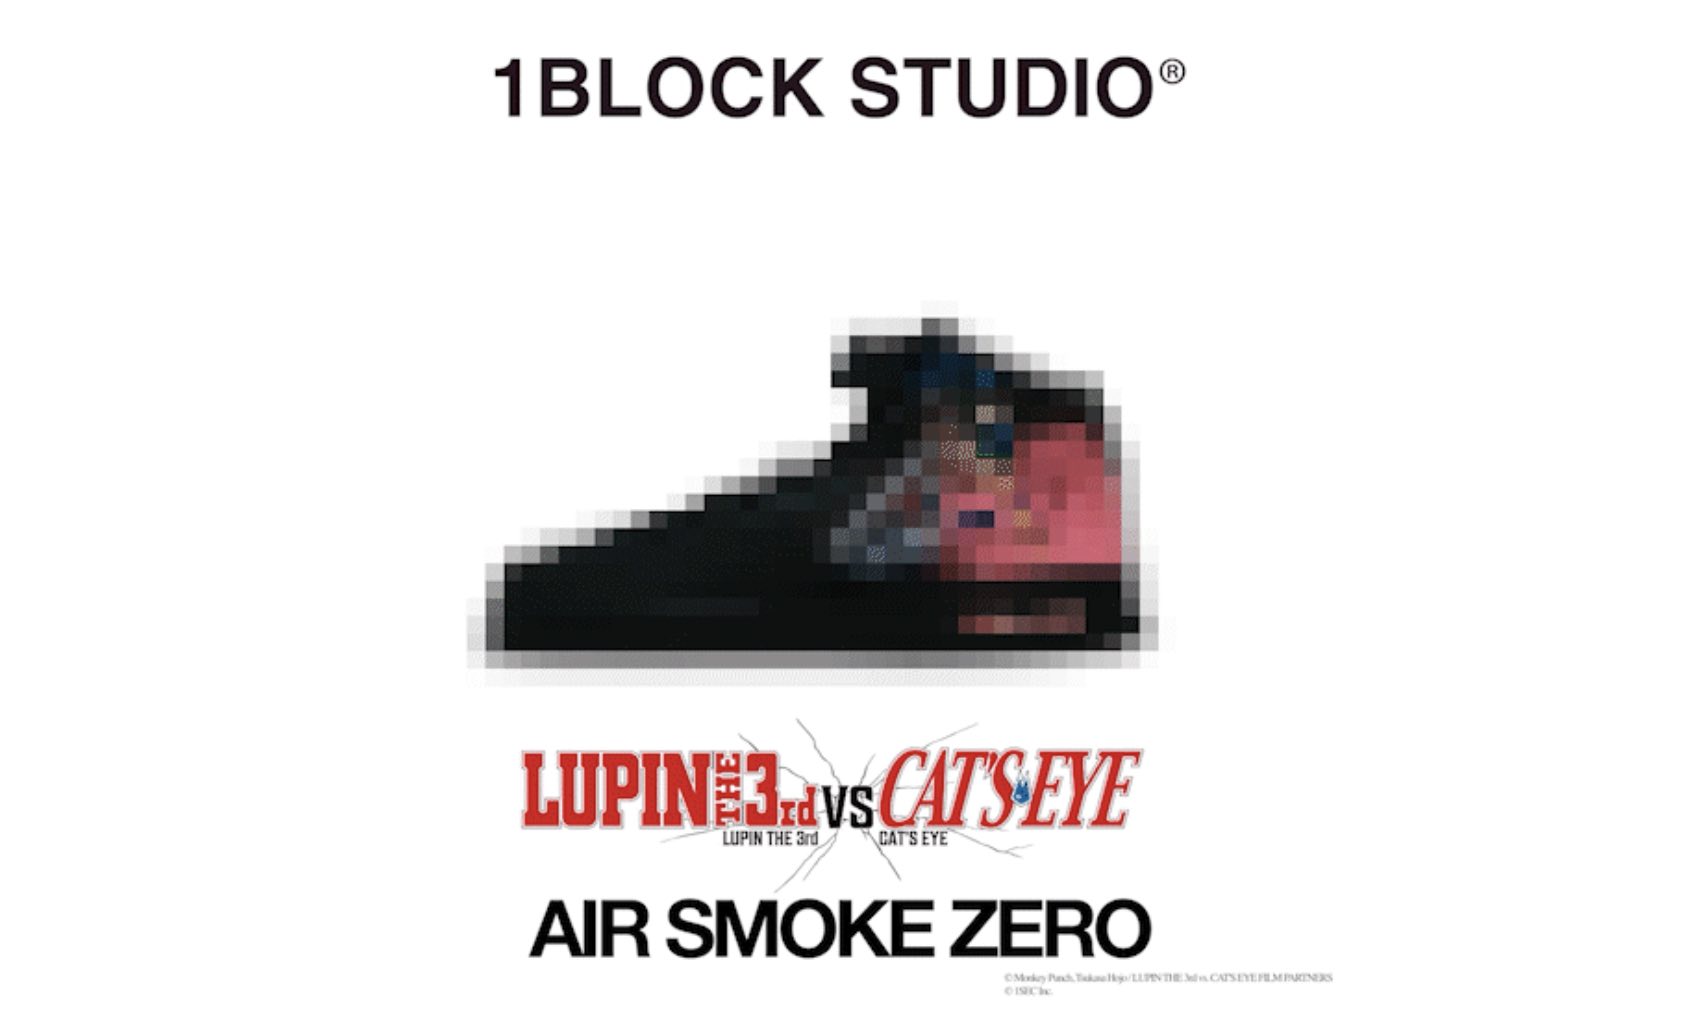 「ルパン三世VSキャッツ・アイ」とNFTバーチャルスニーカー「AIR SMOKE ZERO」のコラボレーションが決定